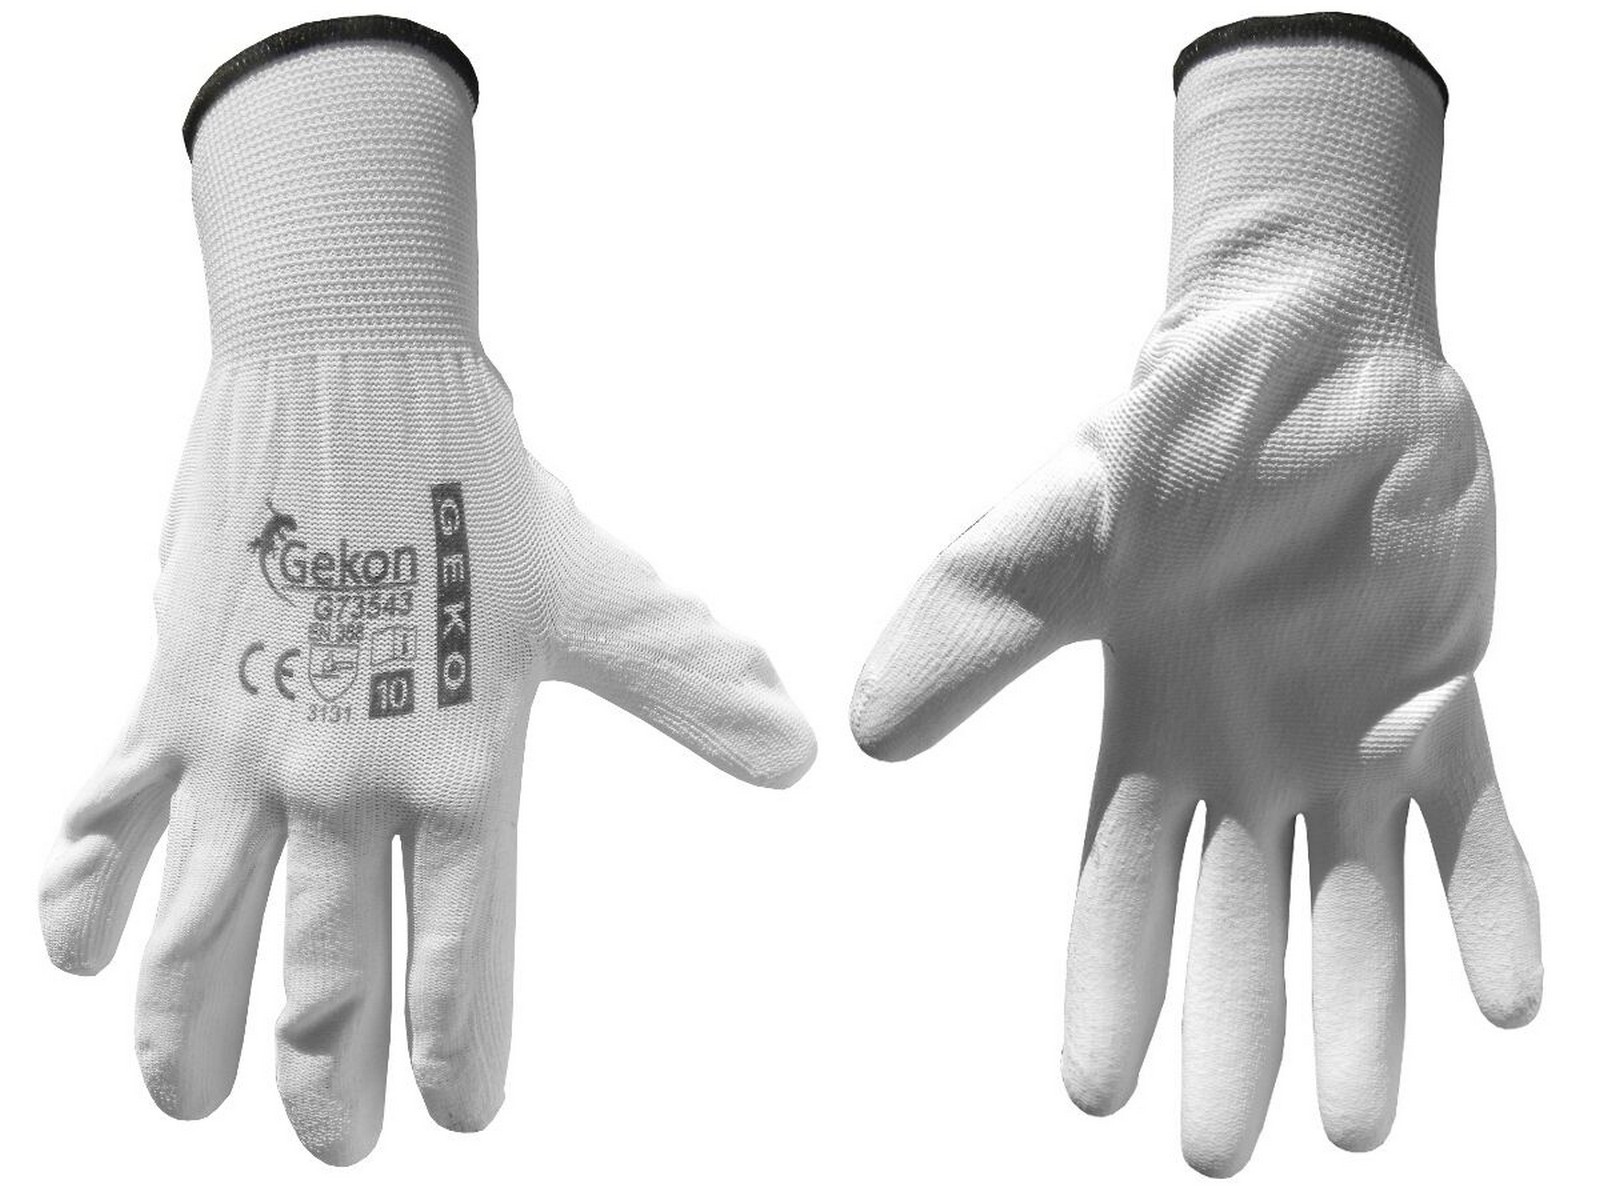 Ochranné rukavice bílé z pletené bavlny, polomáčené v PU, velikost 10" GEKO nářadí G73543